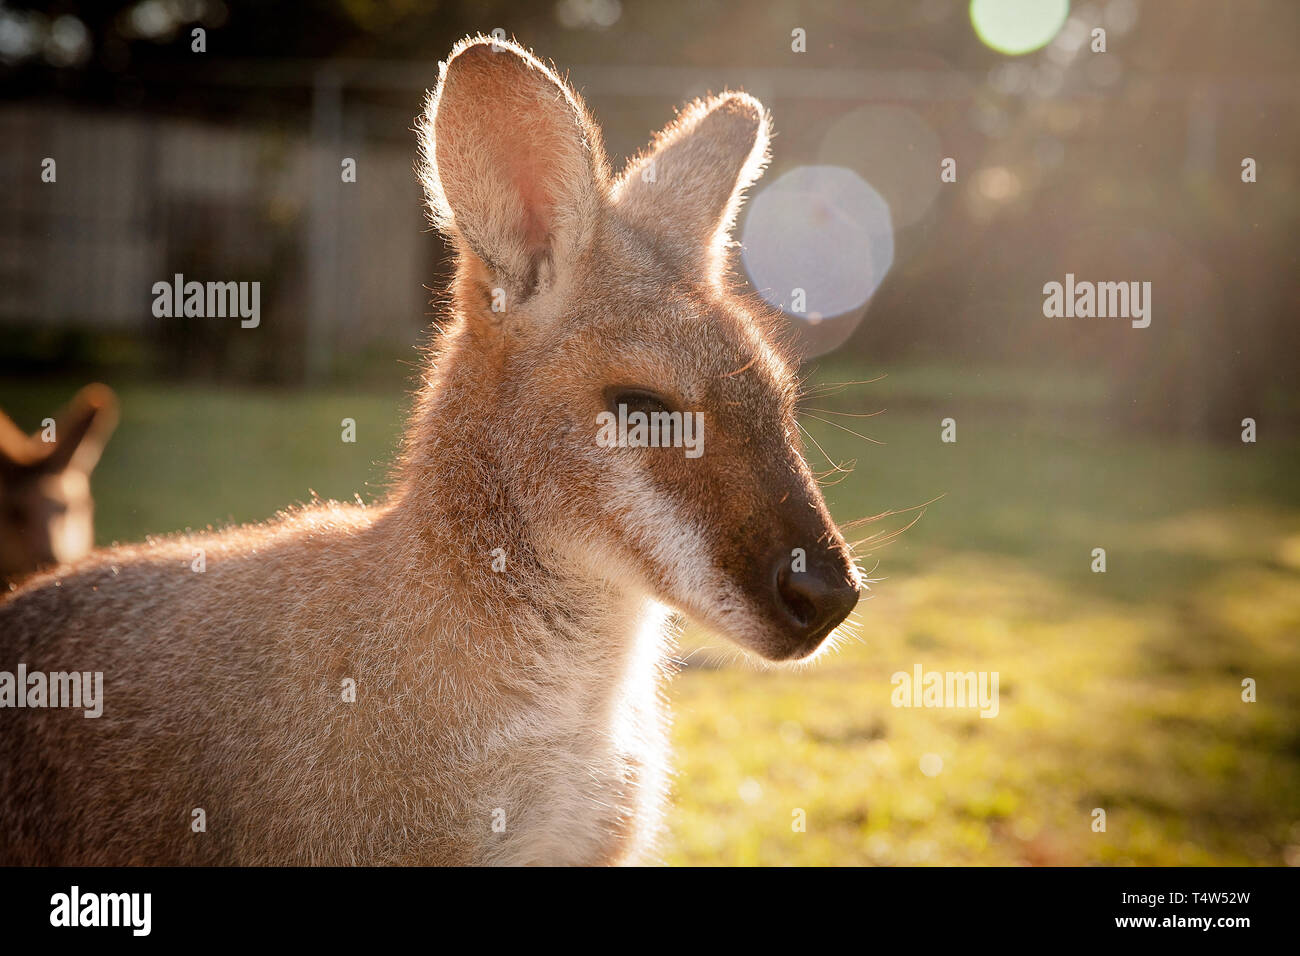 Baby Kangaroo in Sunbeam Stock Photo